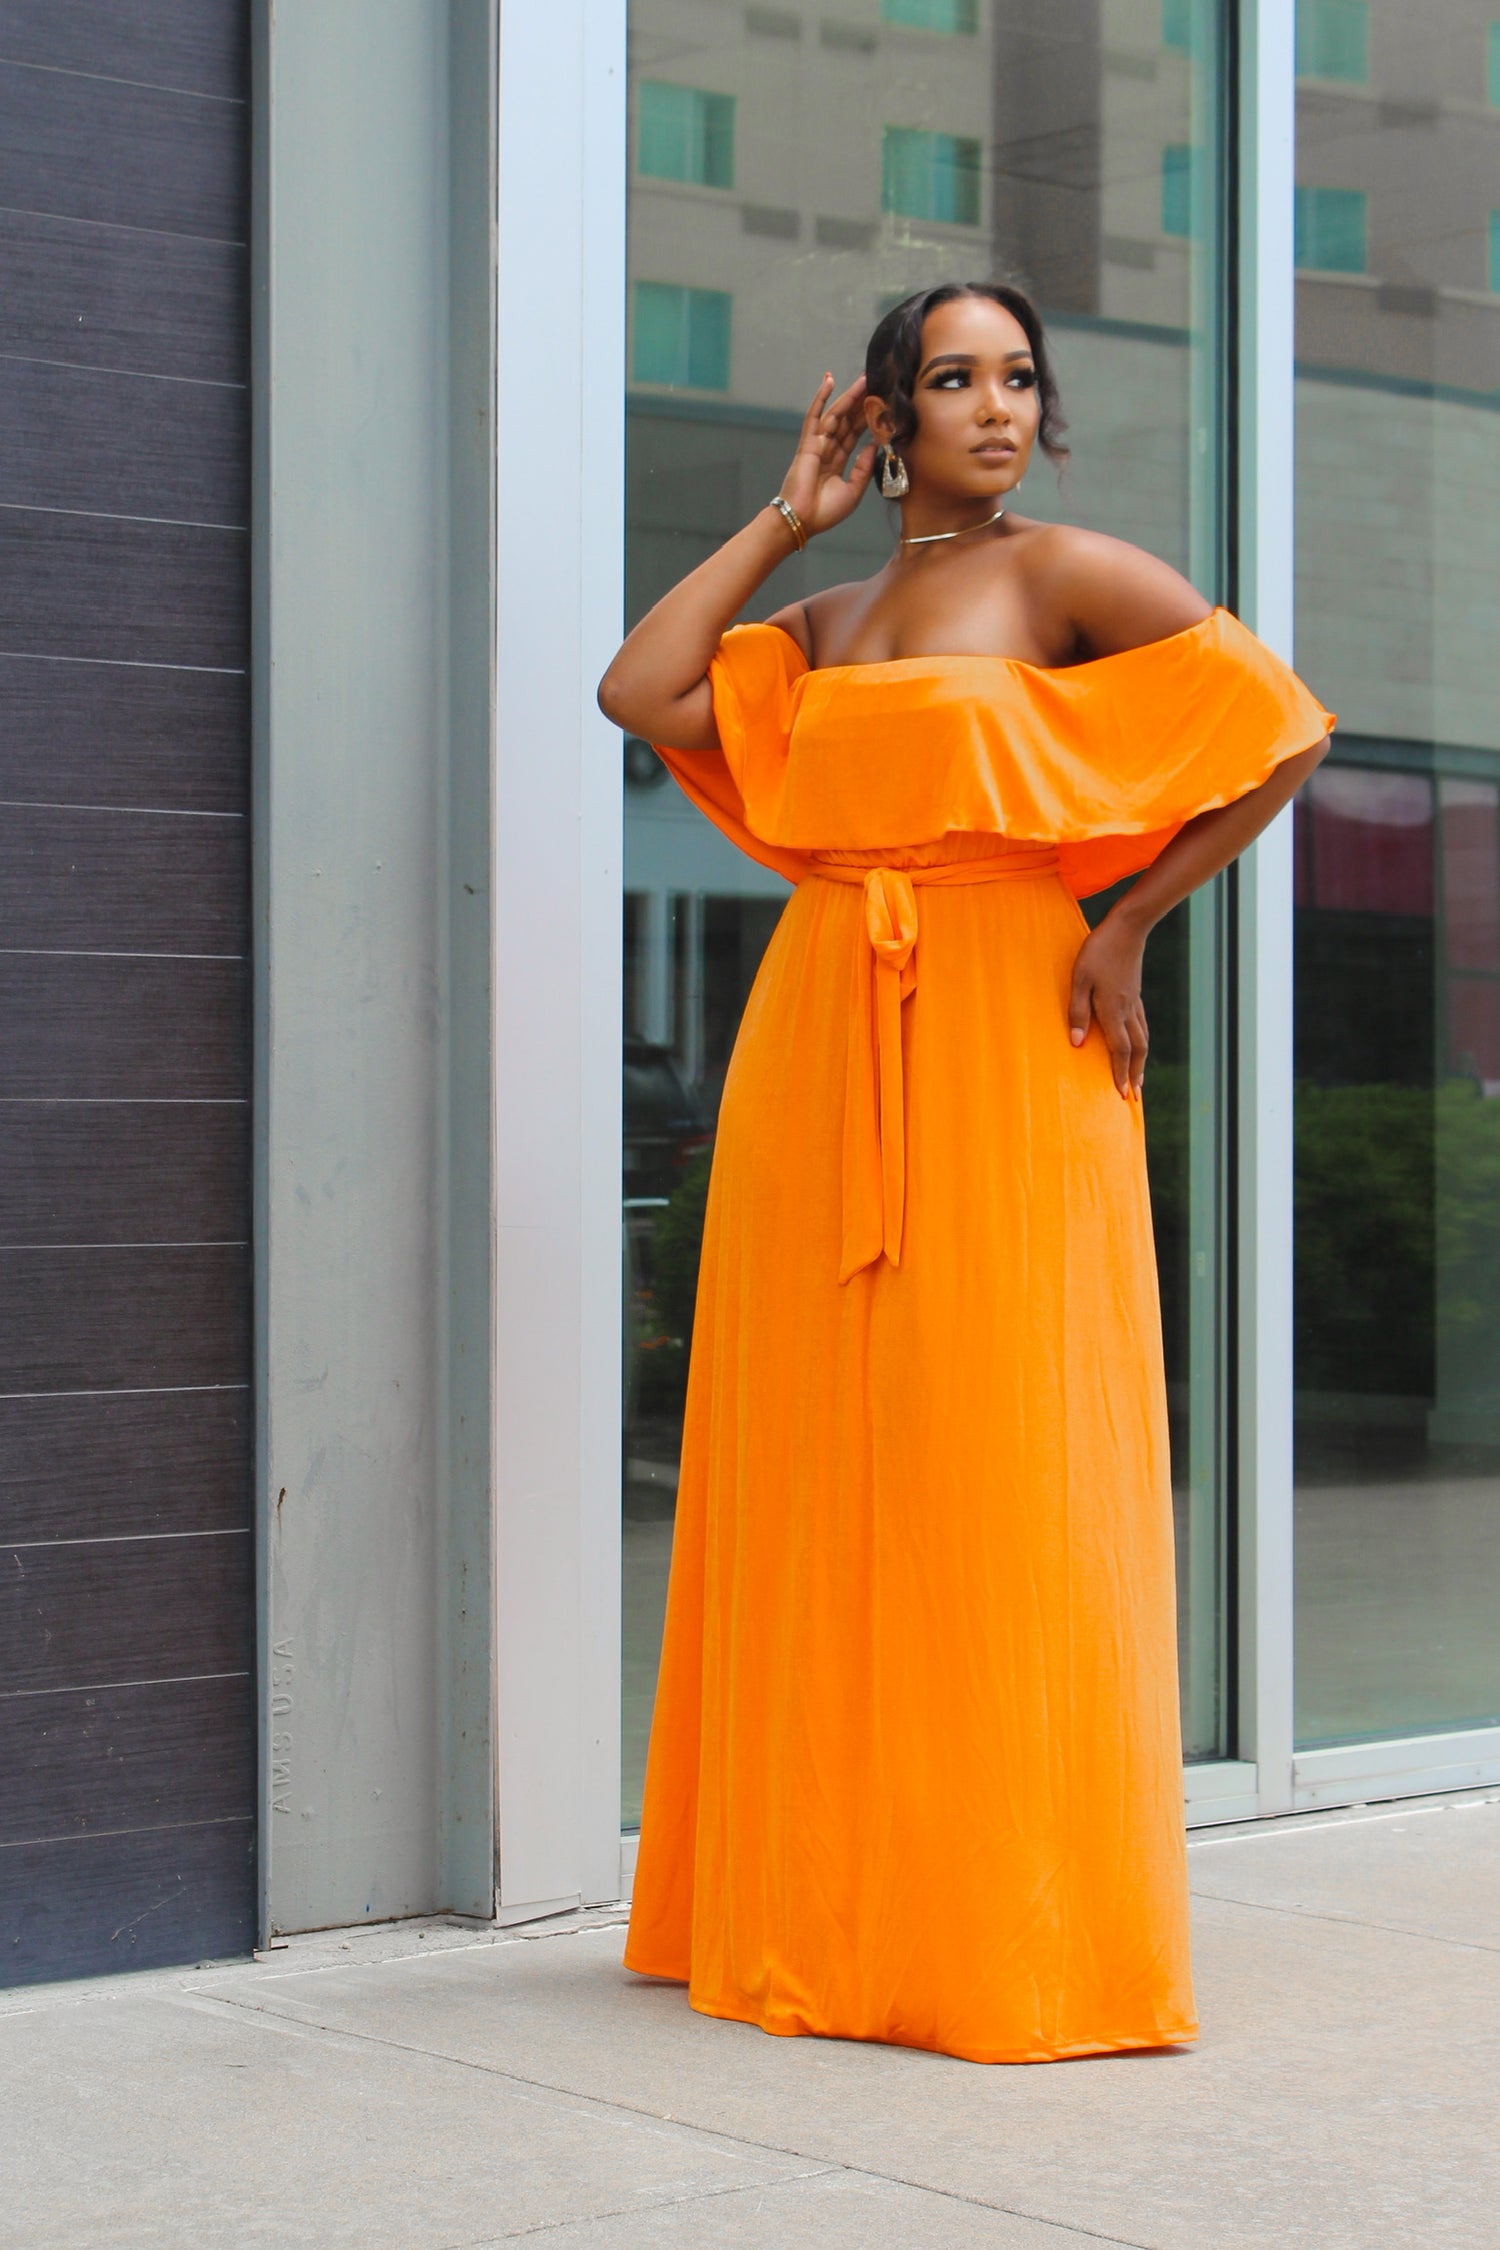 woman posing in a orange dress